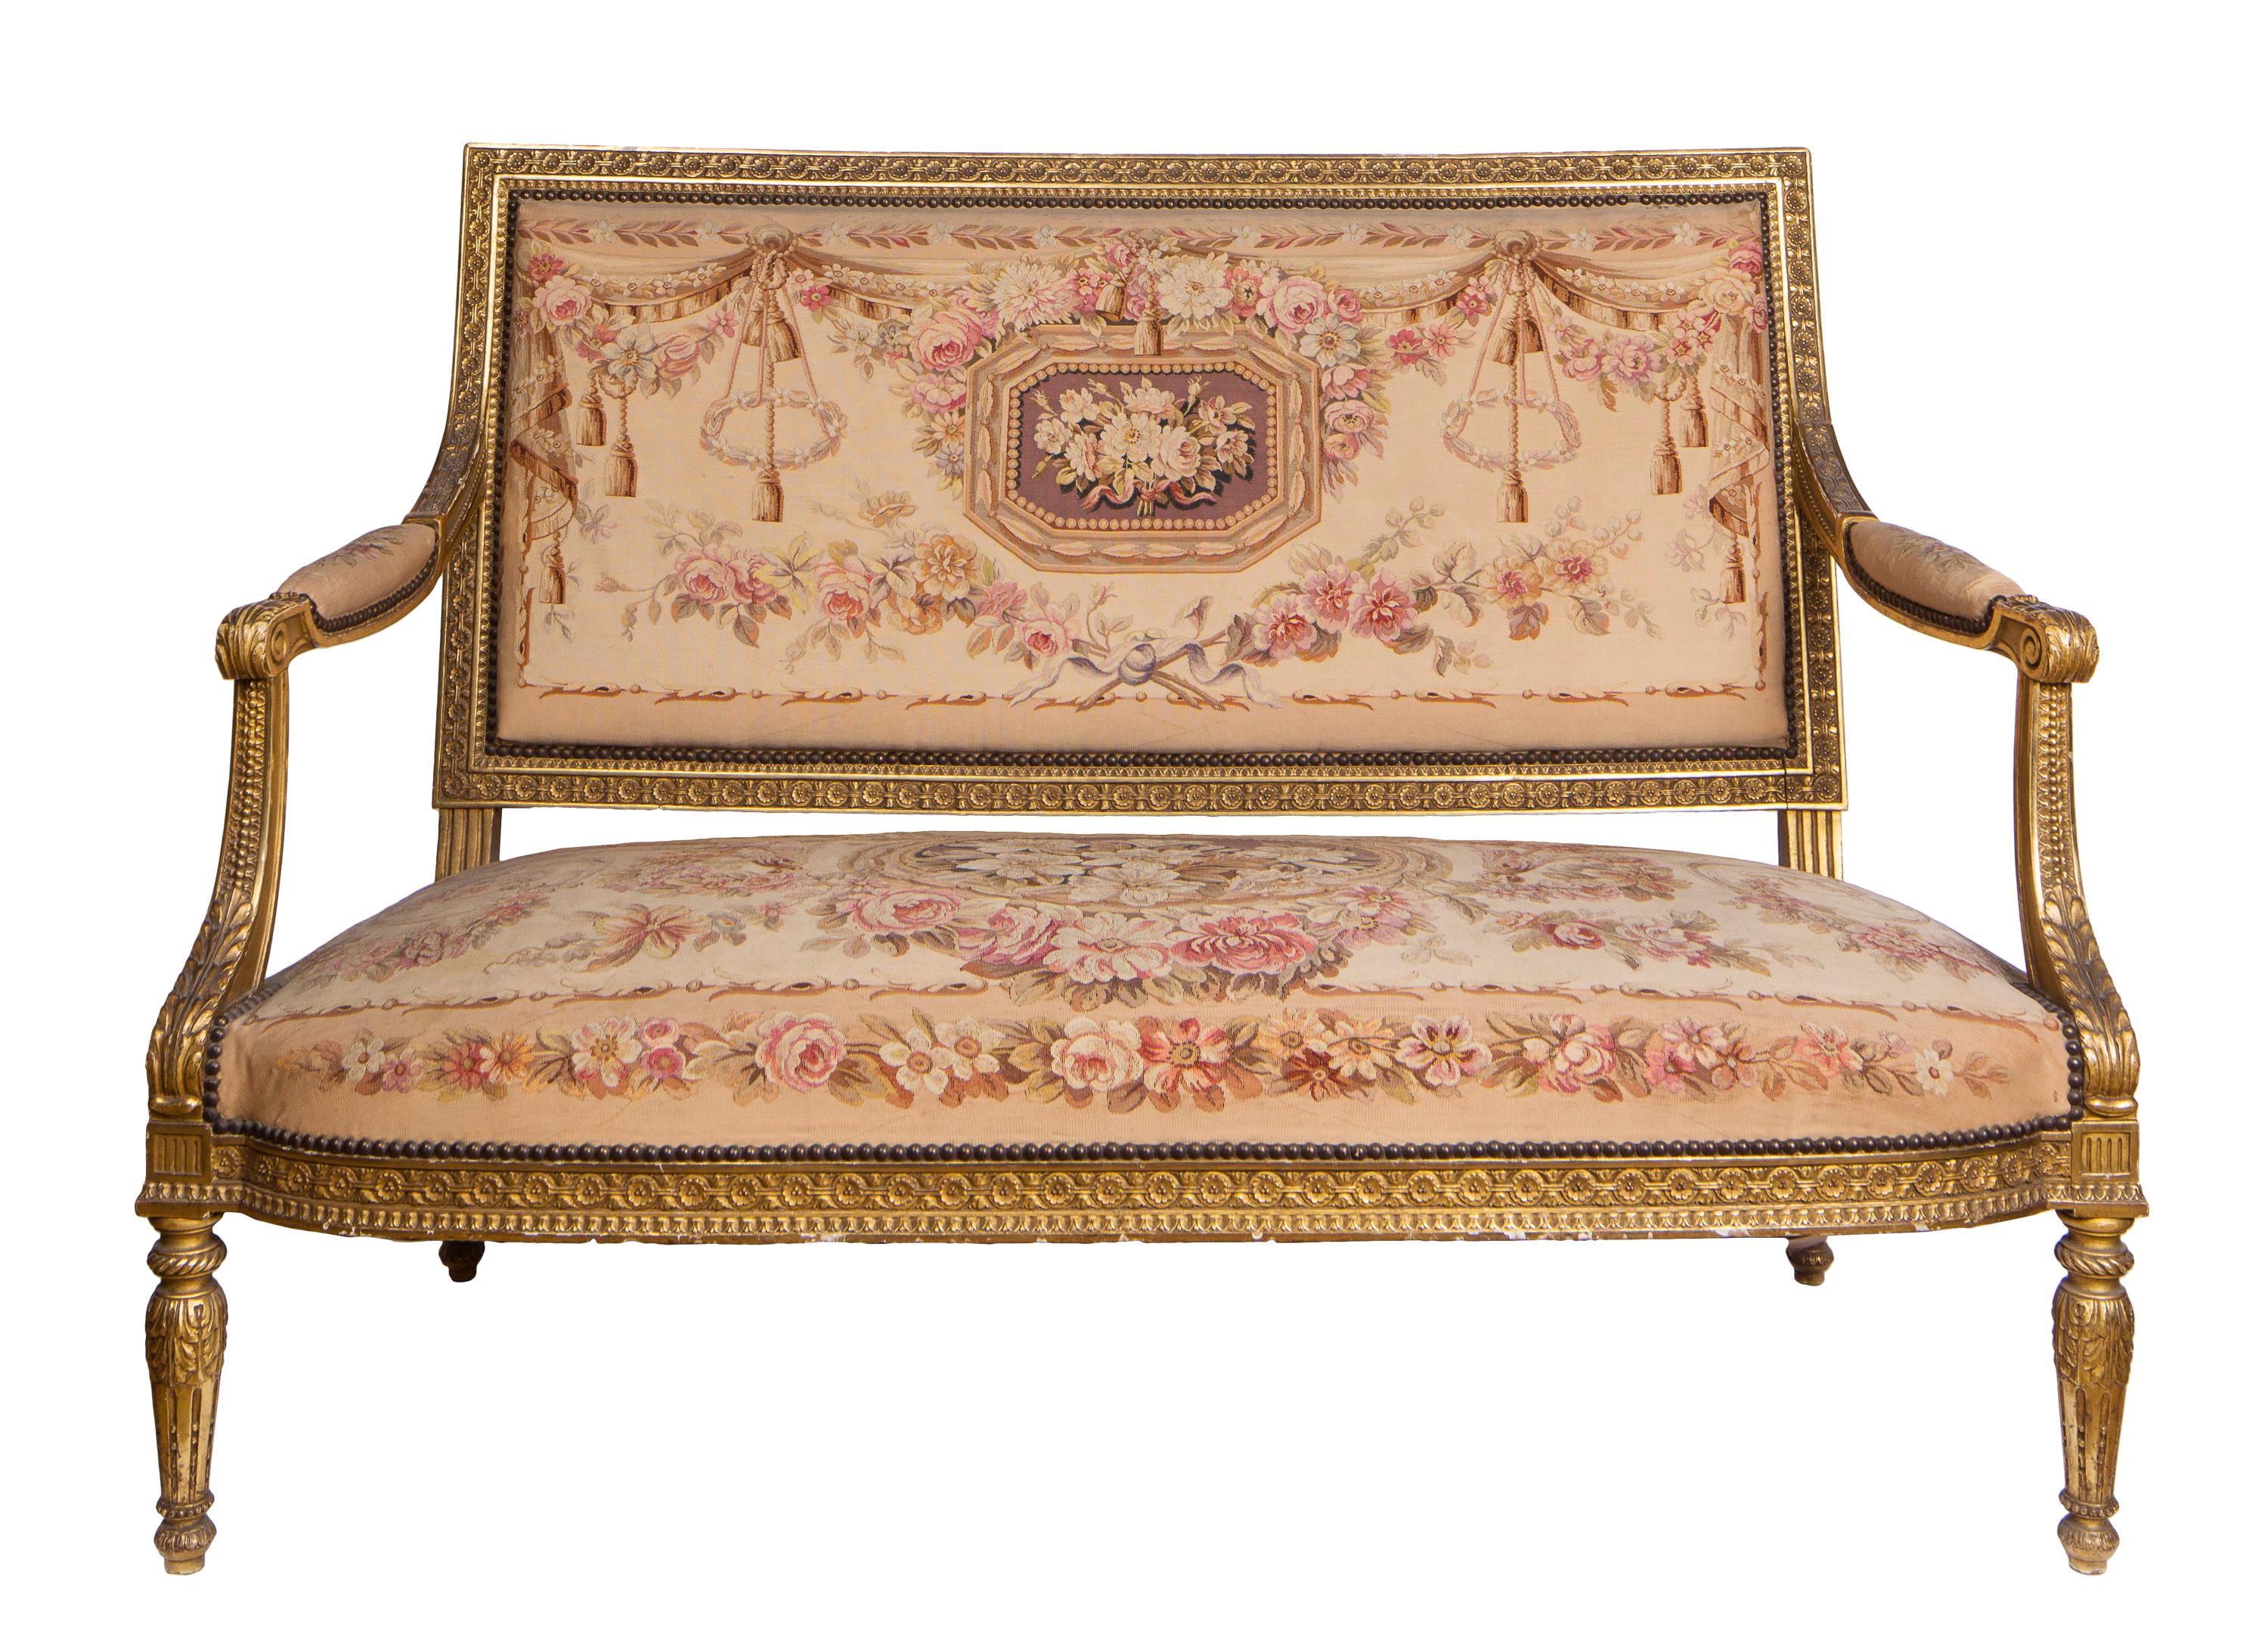 Ensemble de salon français du XIXe siècle de style Louis XVI, composé d'un canapé et de quatre fauteuils assortis. Les cinq pièces sont dotées d'un cadre en bois doré sculpté de manière complexe et sont revêtues d'un tissu de tapisserie d'Aubusson